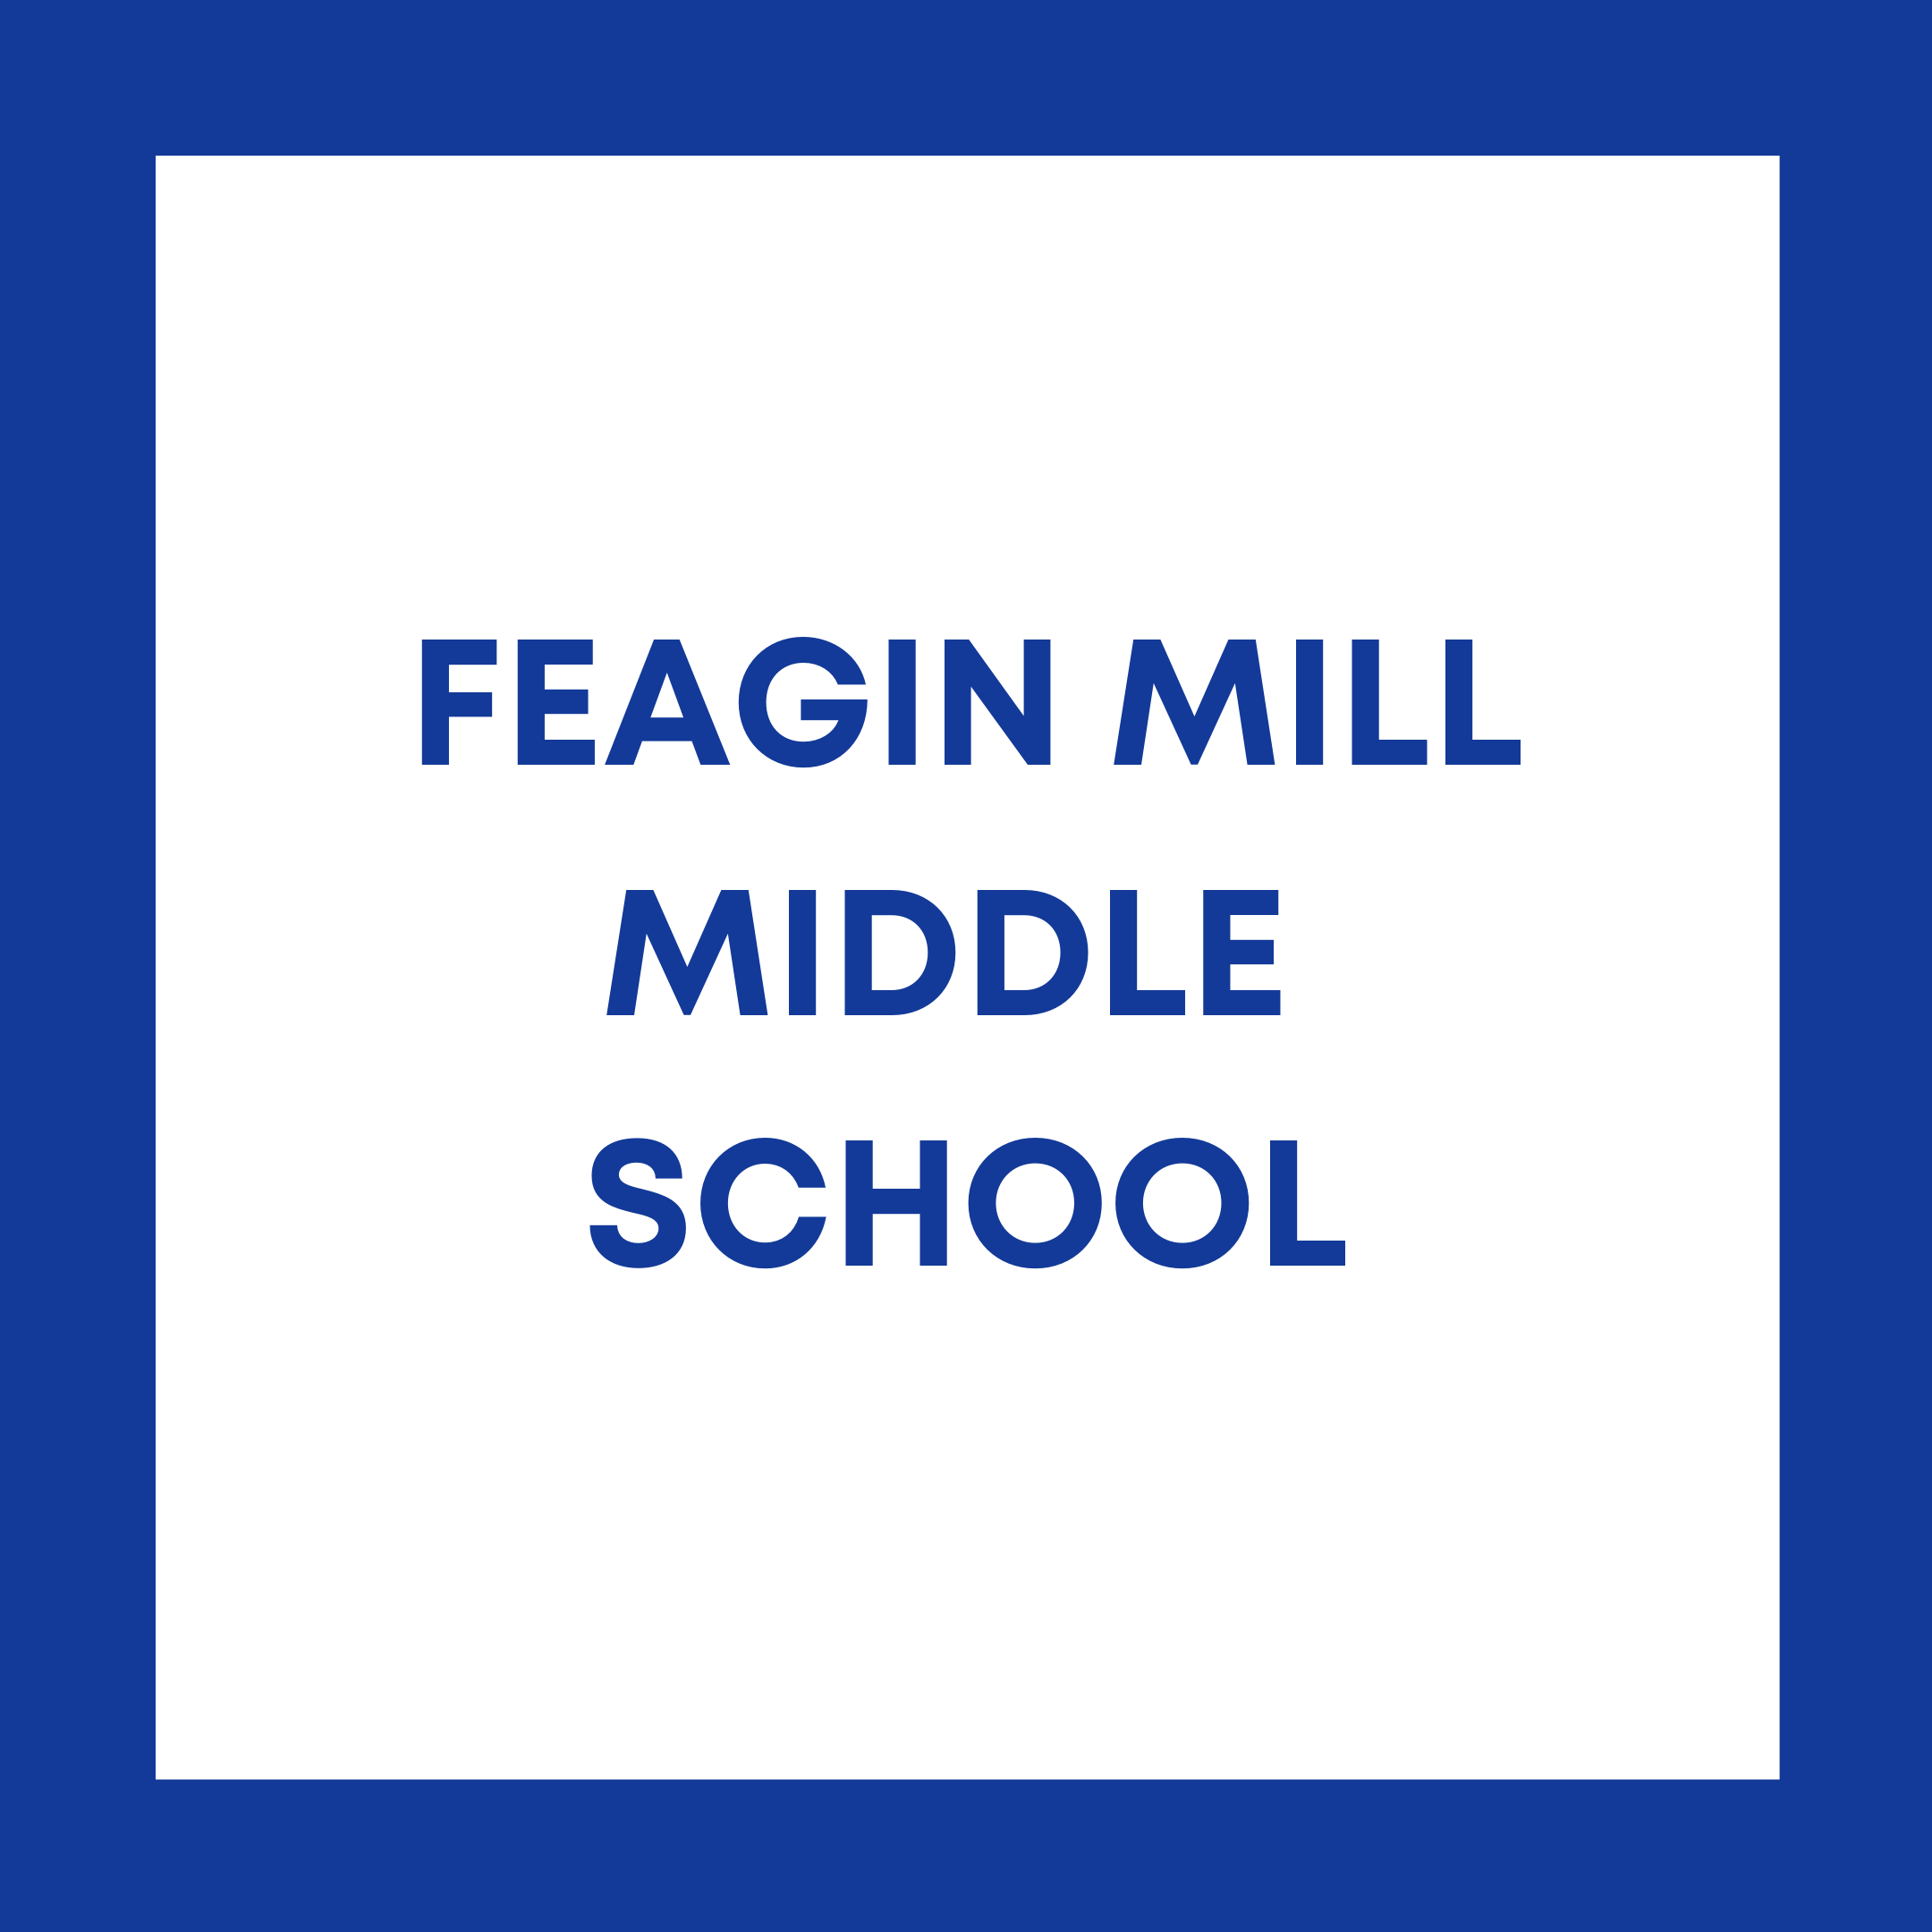 Feagin Mill Middle School